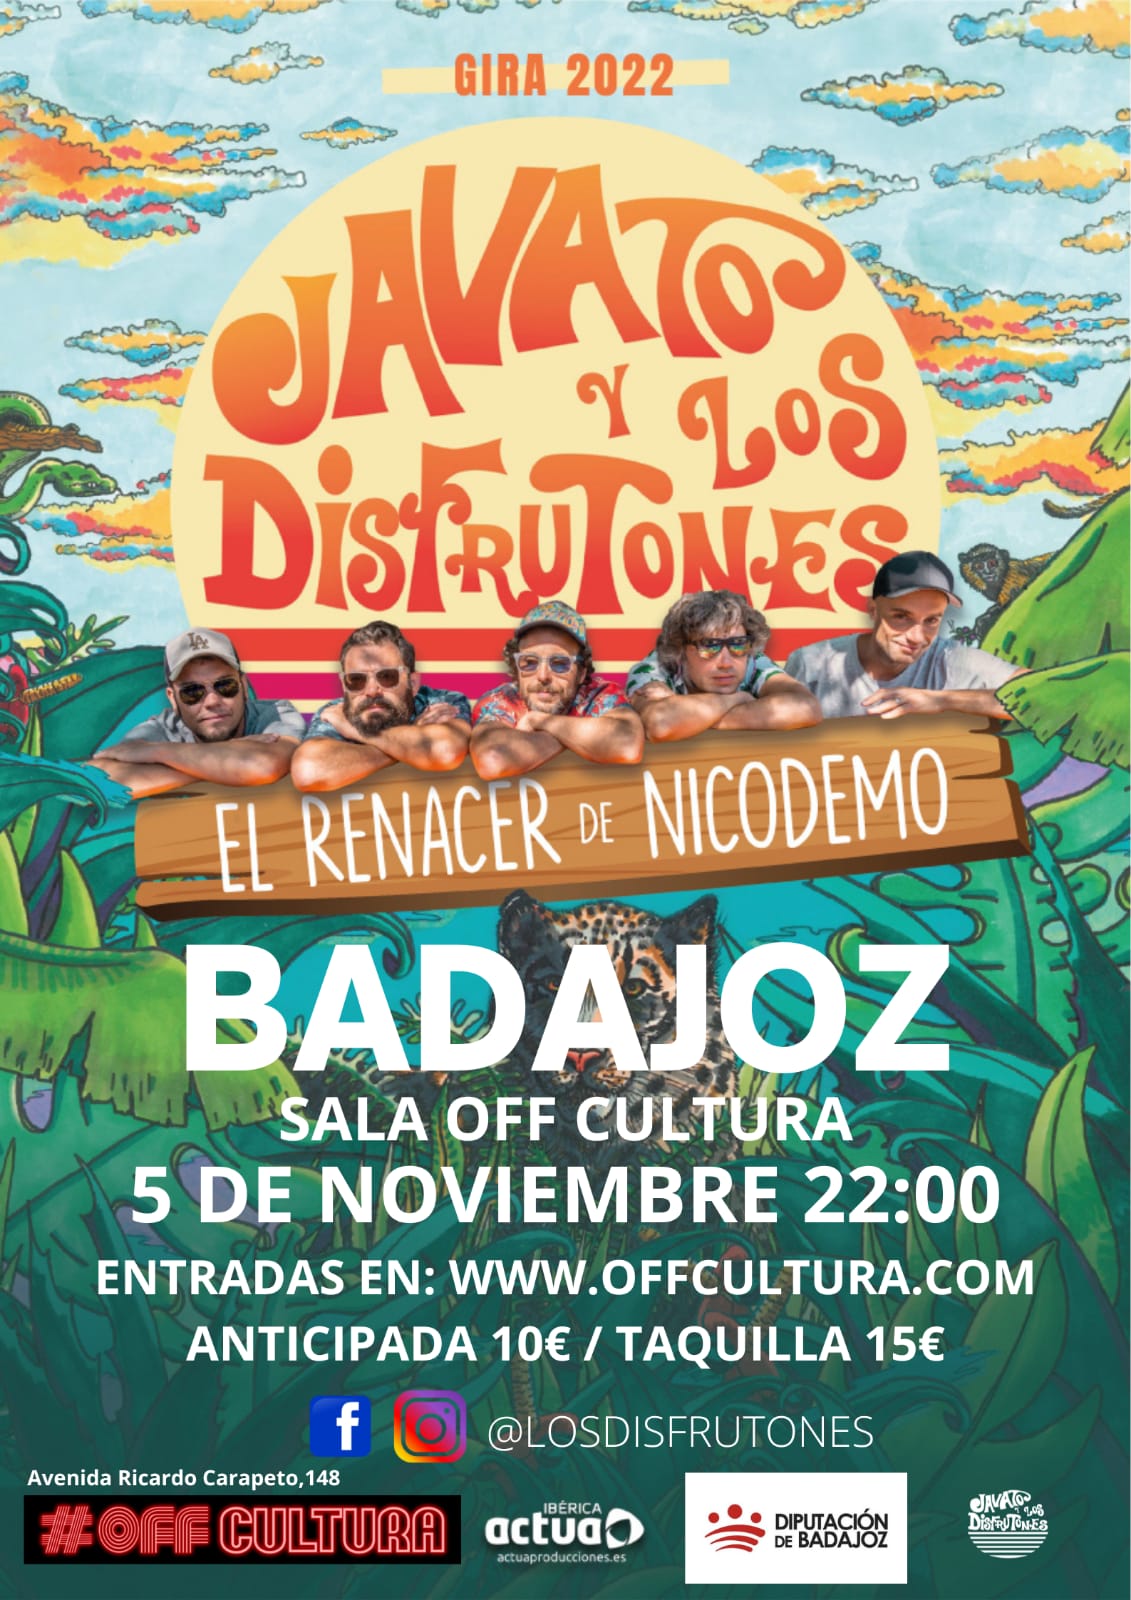 Javato y Los Disfrutones Off Cultura Badajoz